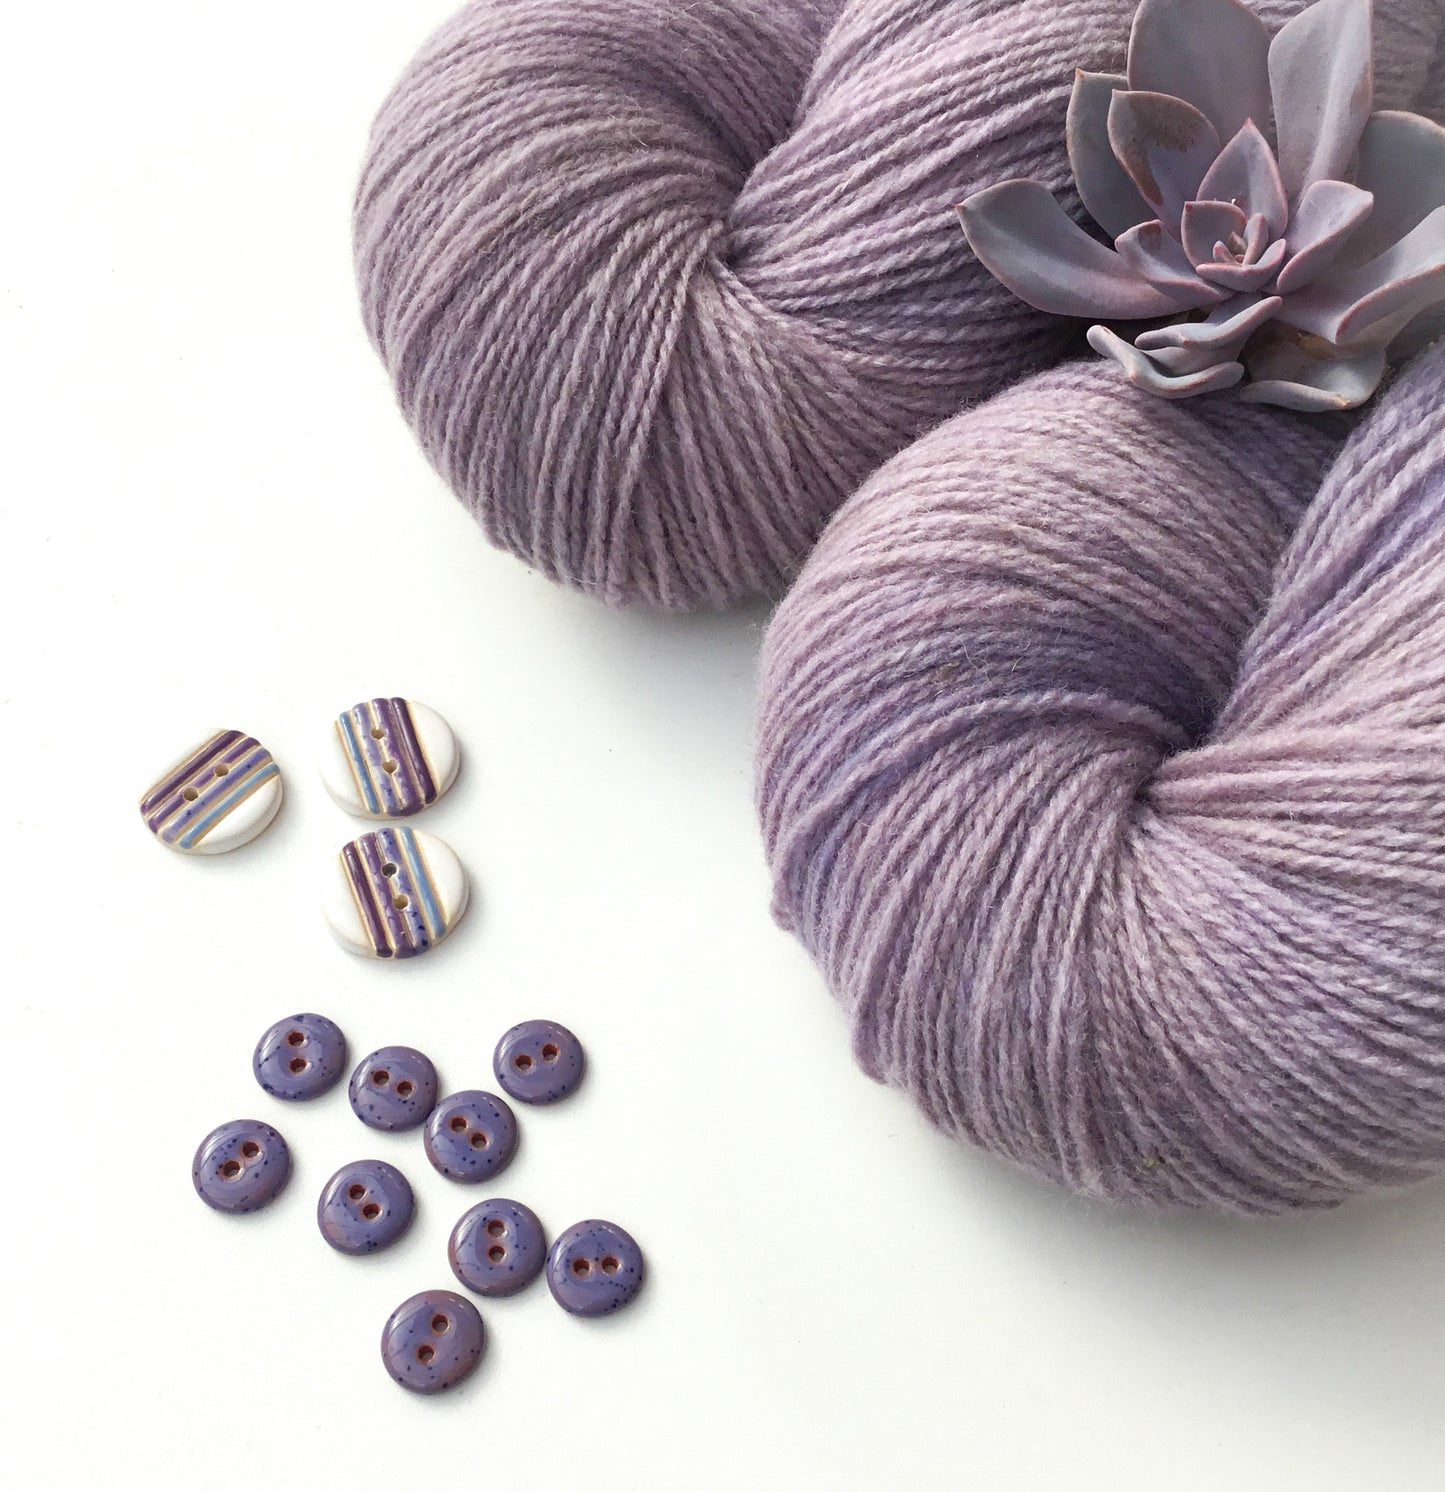 Serenity Purple Fingering Wool Yarn (80 Merino/20 Romney) 2 ply - 4 oz skeins